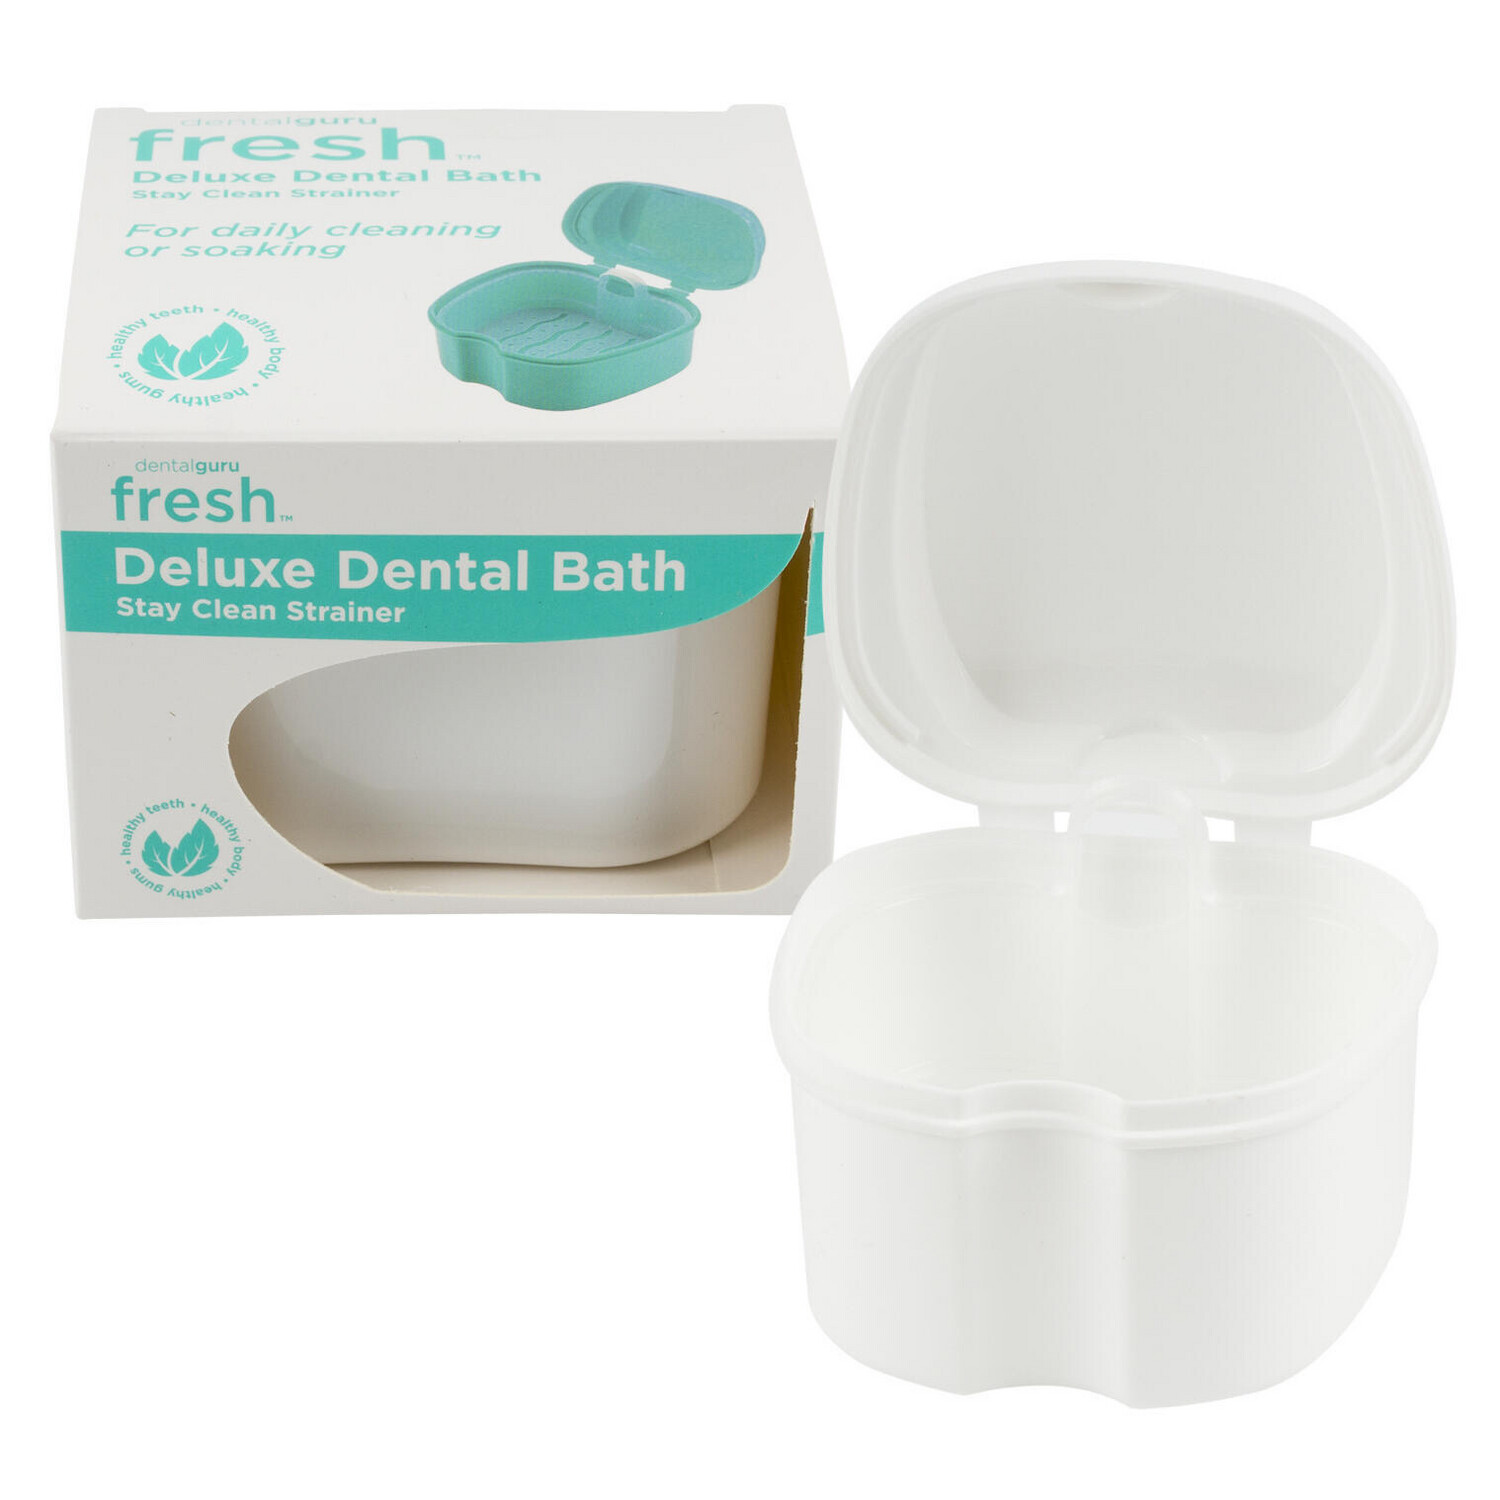 Dentalguru Fresh Deluxe Dental Bath Taza Dentadura